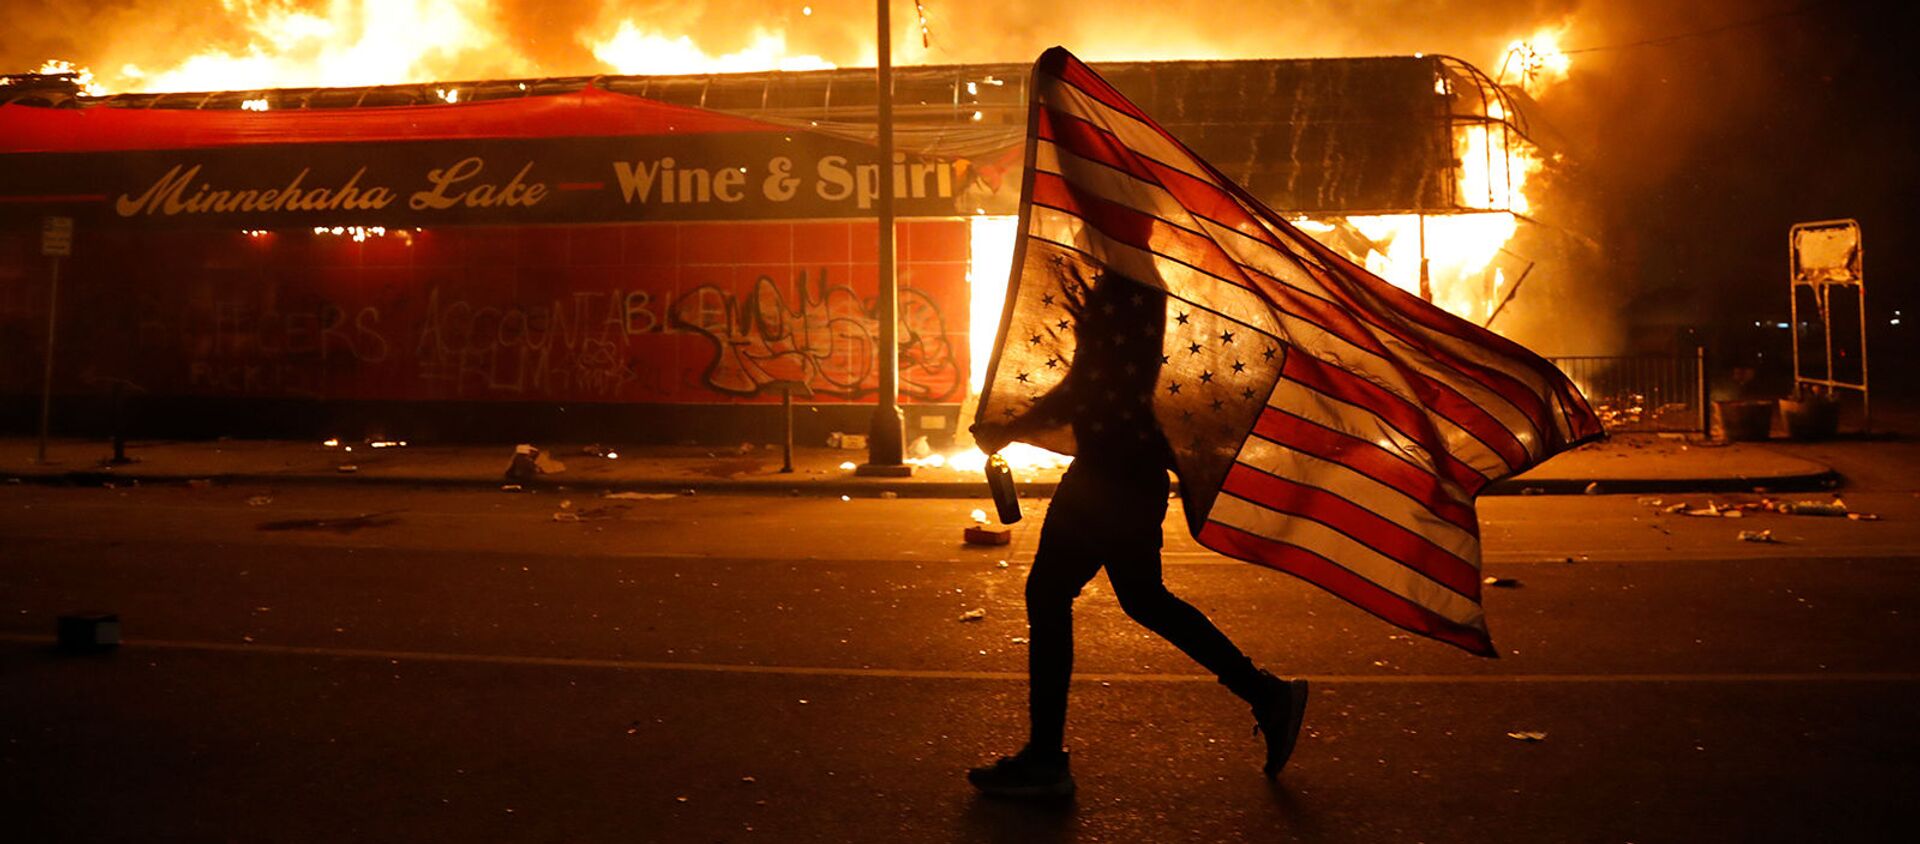 Протестующий с перевернутым флагом США во время демонстрации в связи со смертью Джорджа Флойда, убитого полицейским (28 мая 2020). Миннеаполис - Sputnik Армения, 1920, 02.06.2020